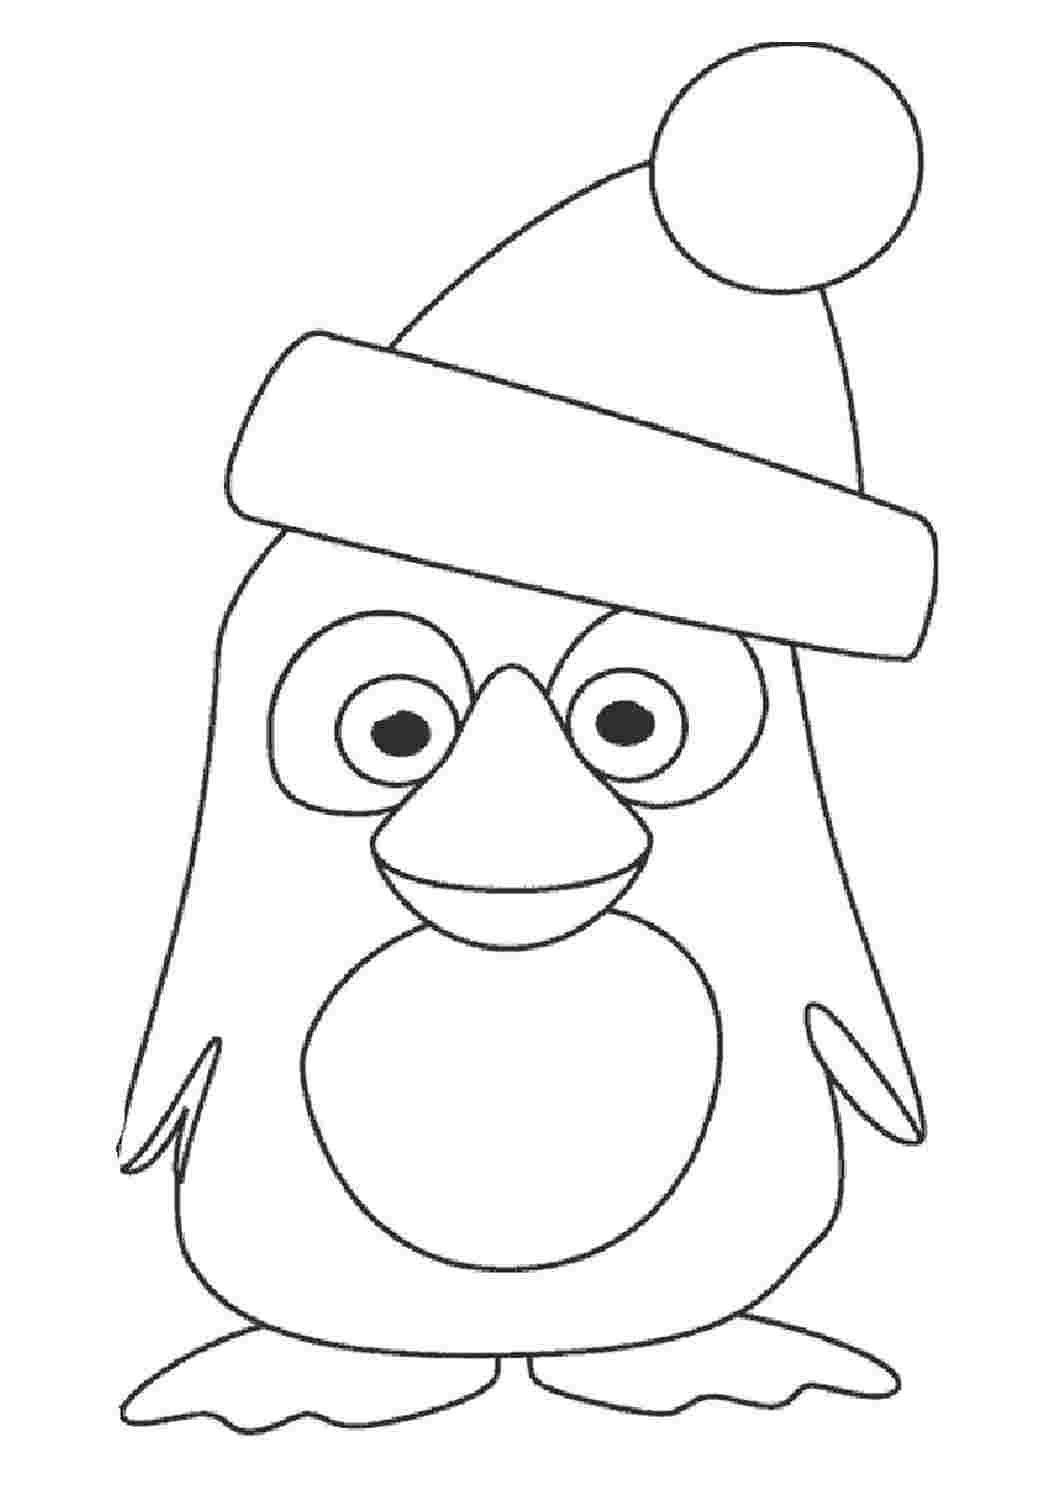 Рисунок пингвина для раскрашивания